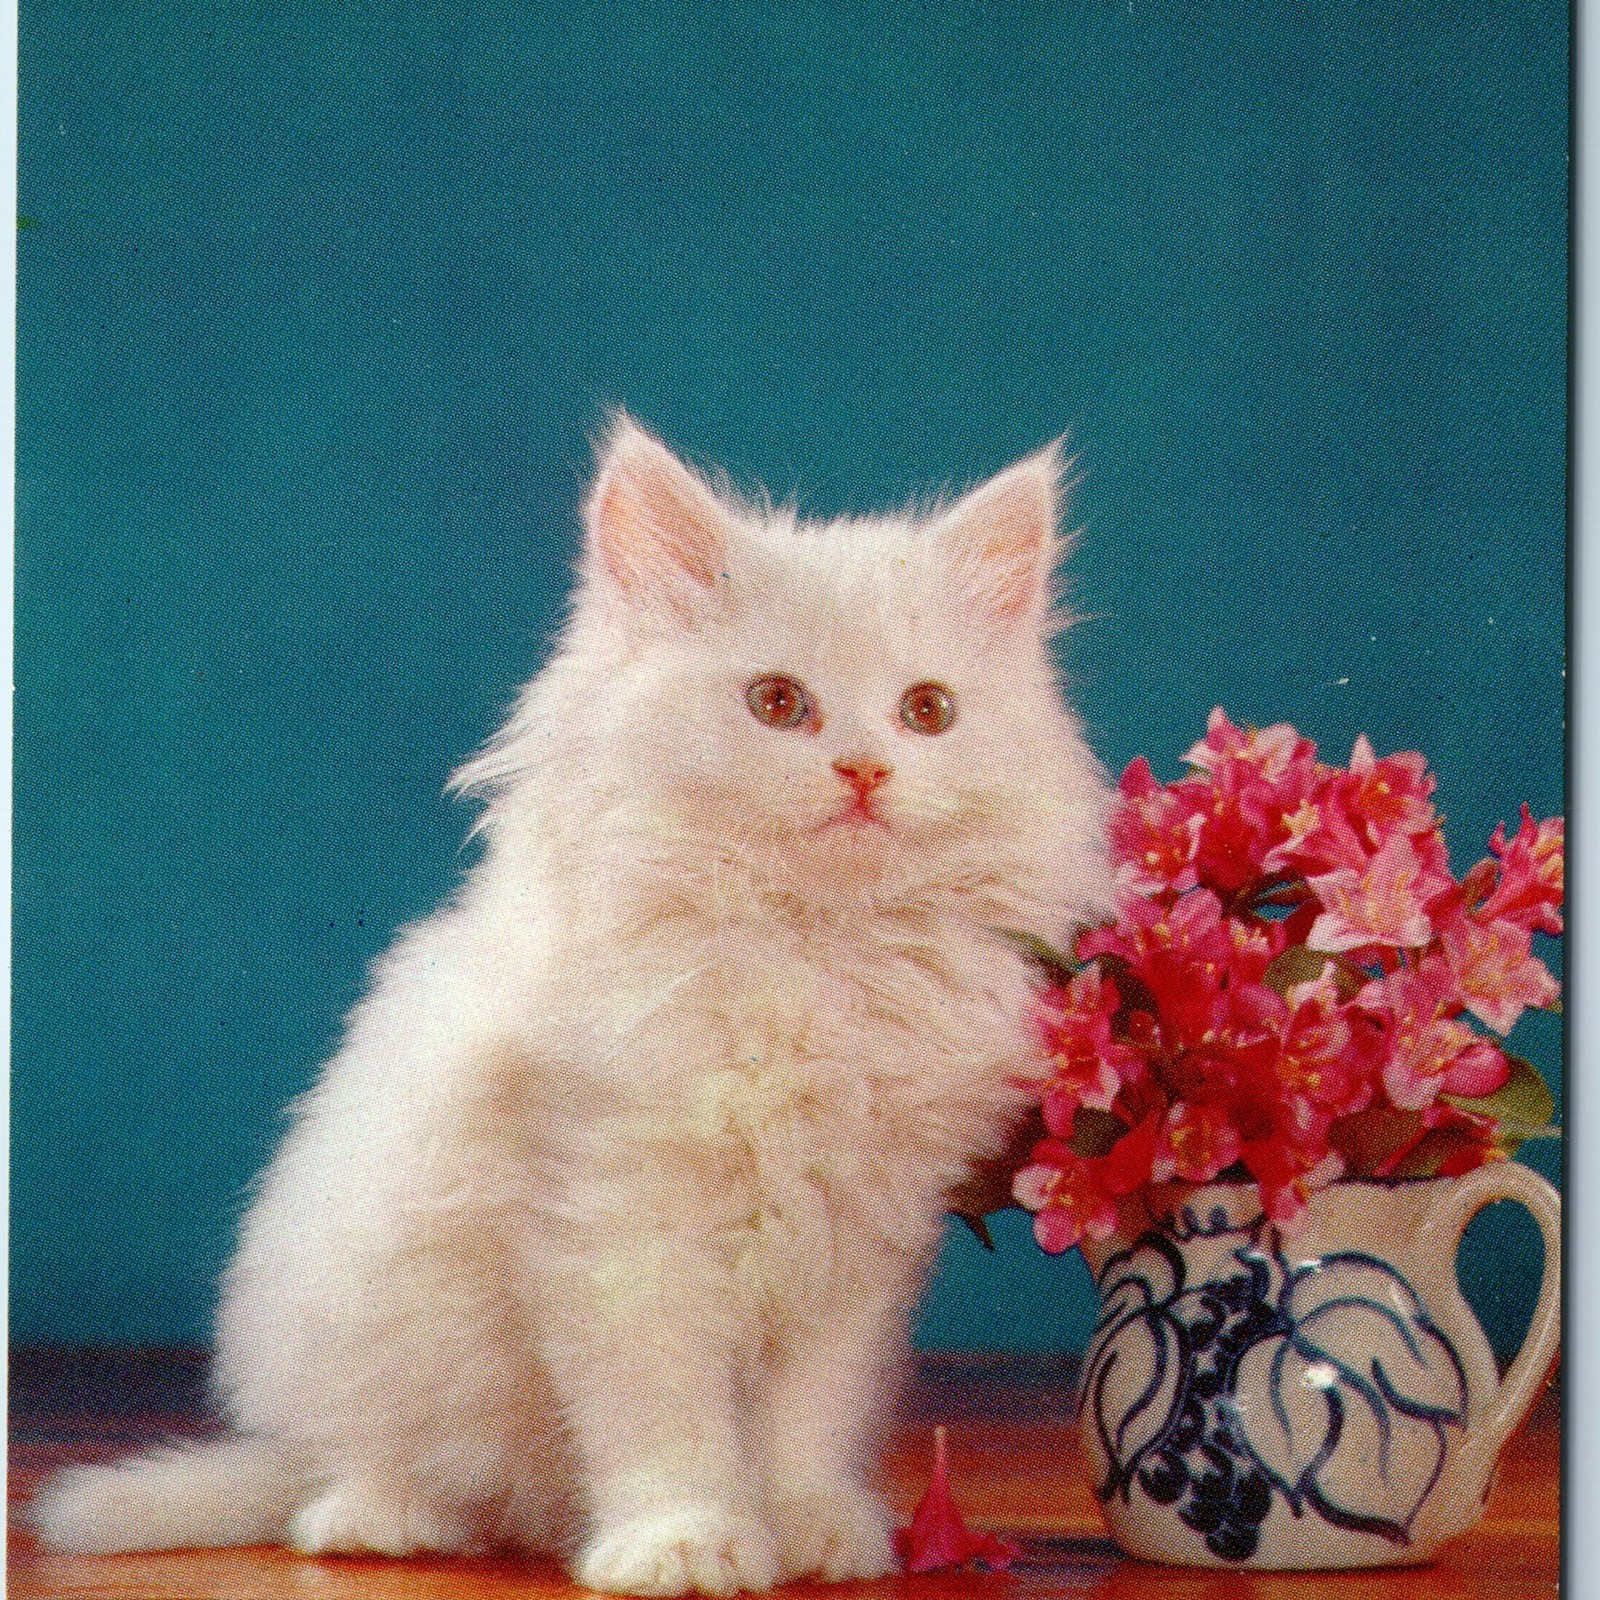 c1960s Adorable Kitty Kat Cute White Cat Little Kitten Fancy Fur Flower Vtg A227